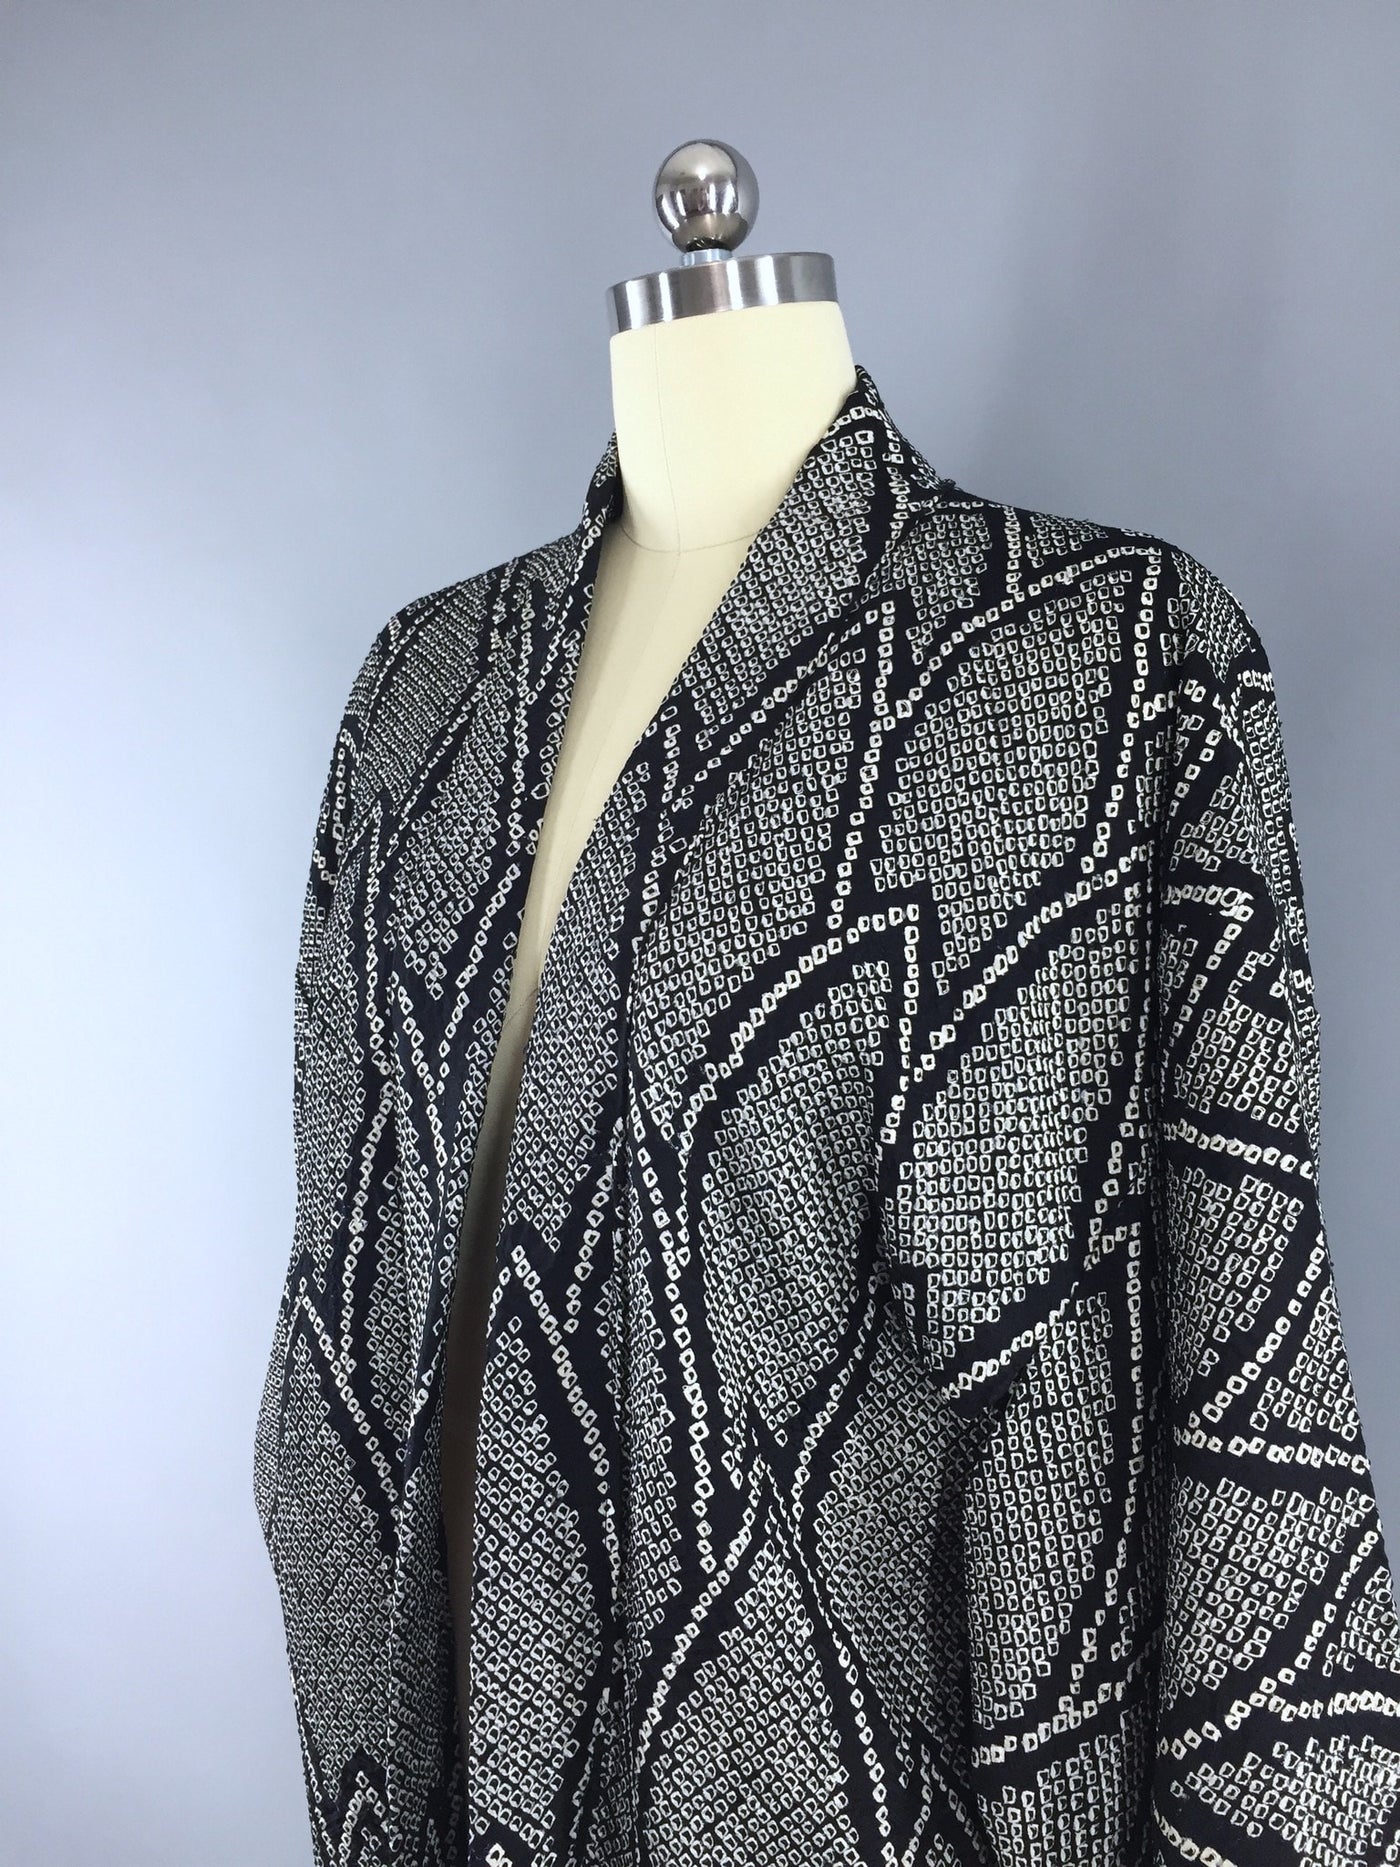 1950s Vintage Silk Haori Kimono Cardigan Jacket in Black and White Shibori - ThisBlueBird